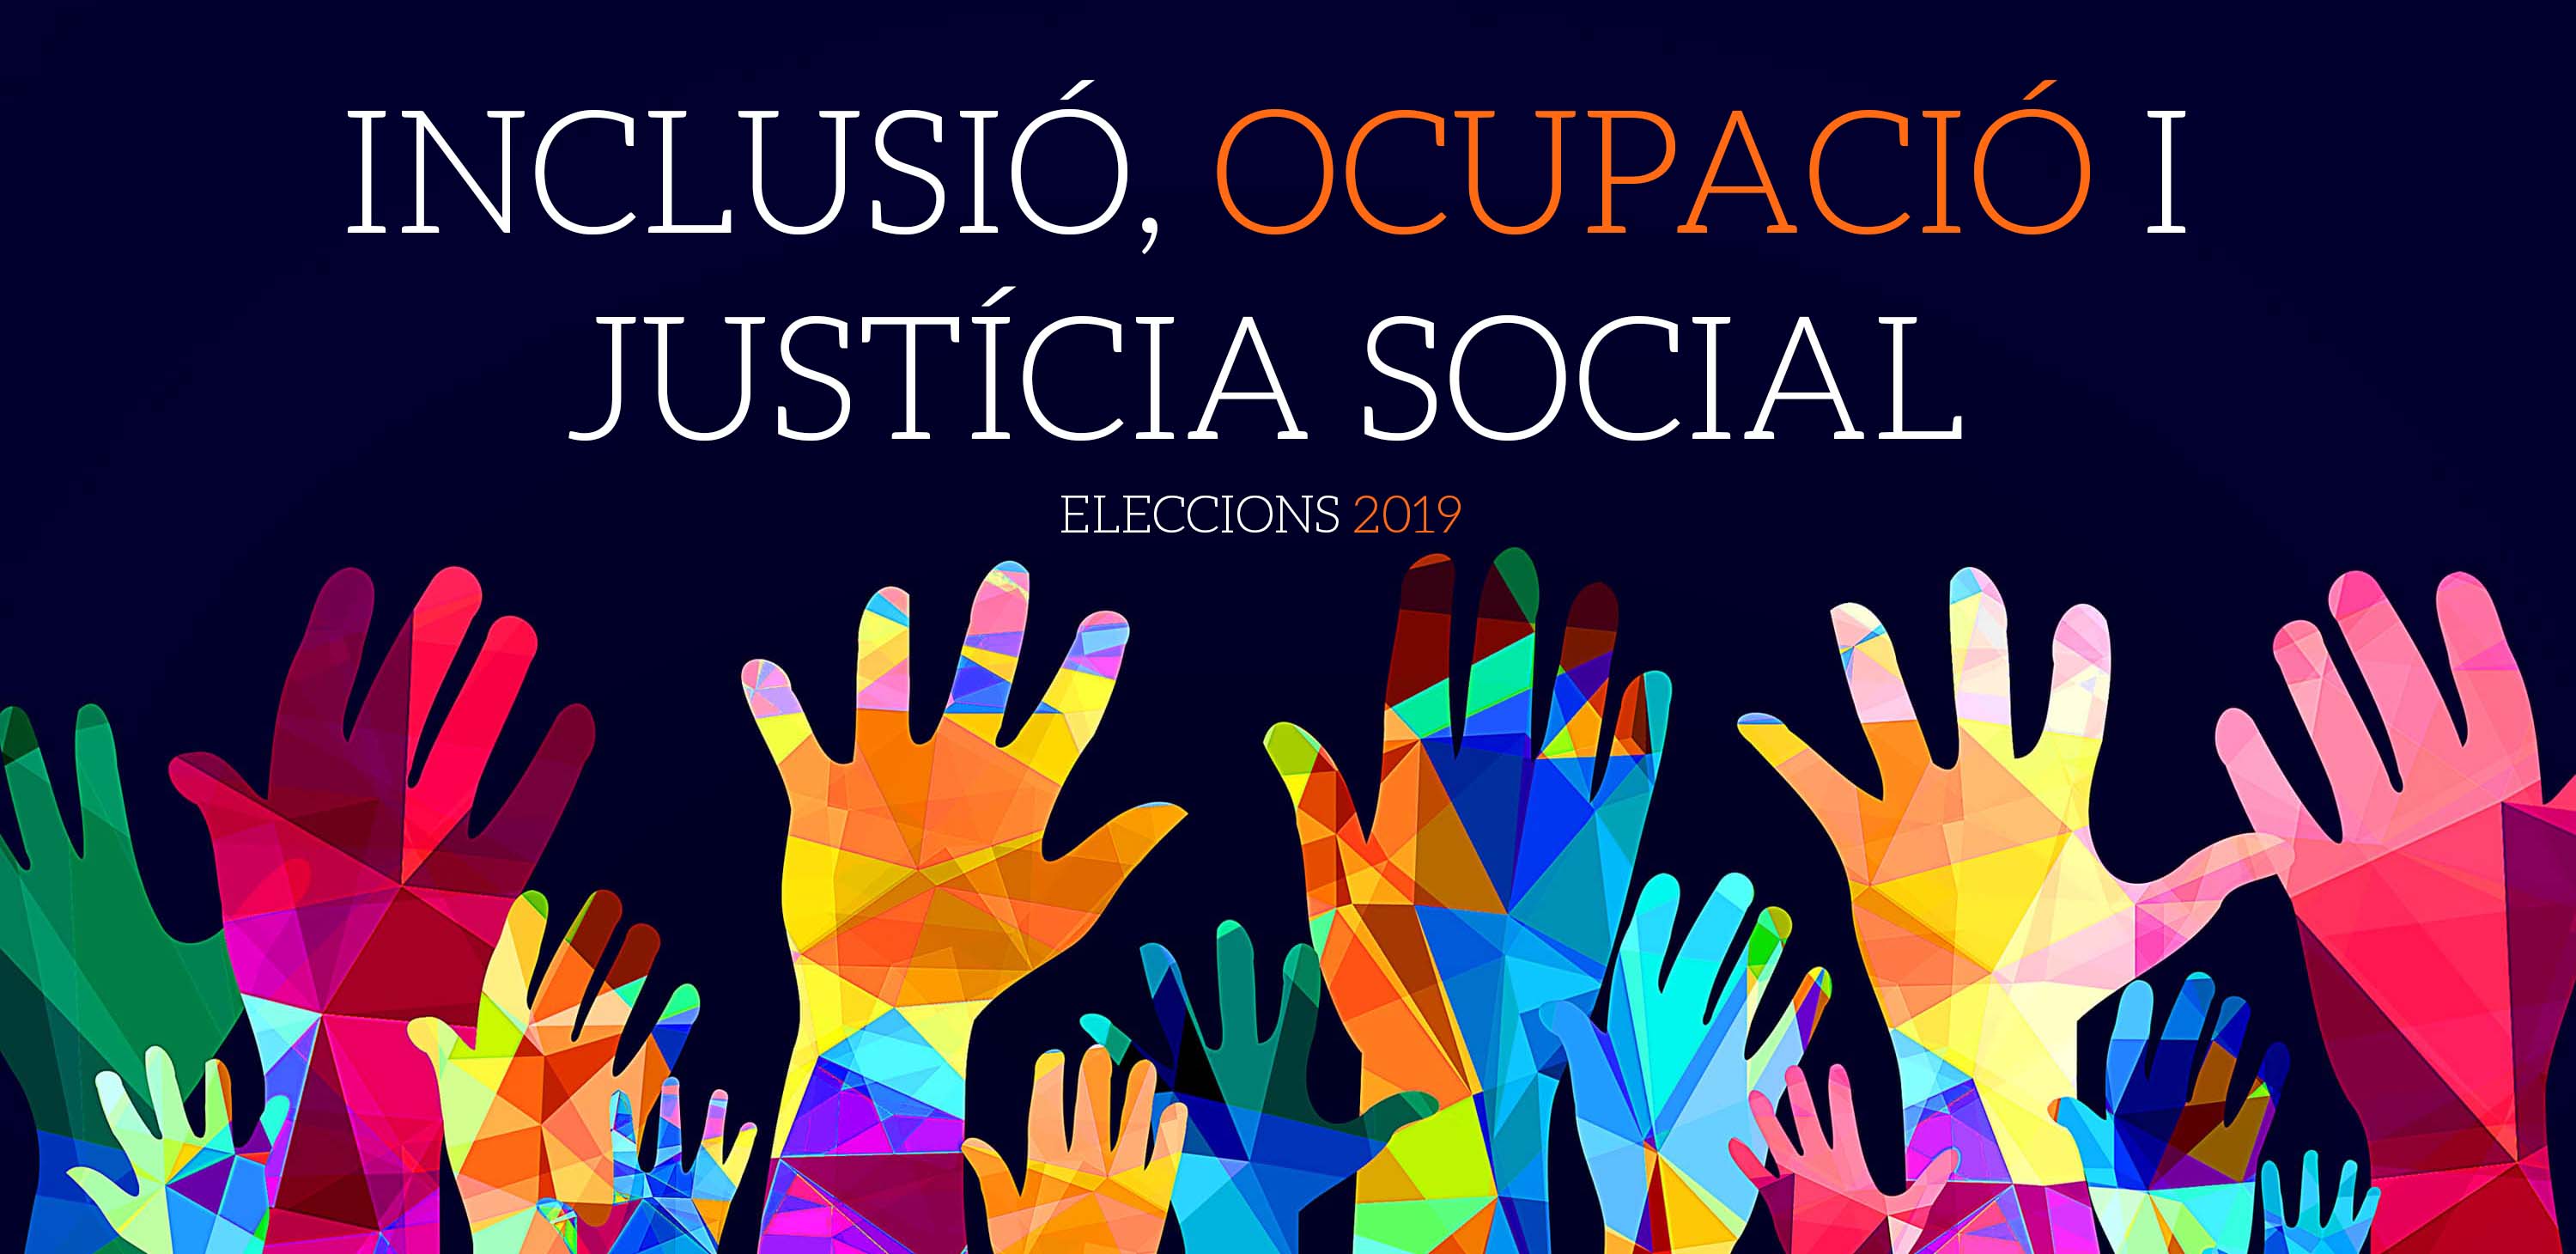 Ir a Davant les pròximes eleccions: Inclusió, ocupació i justícia social